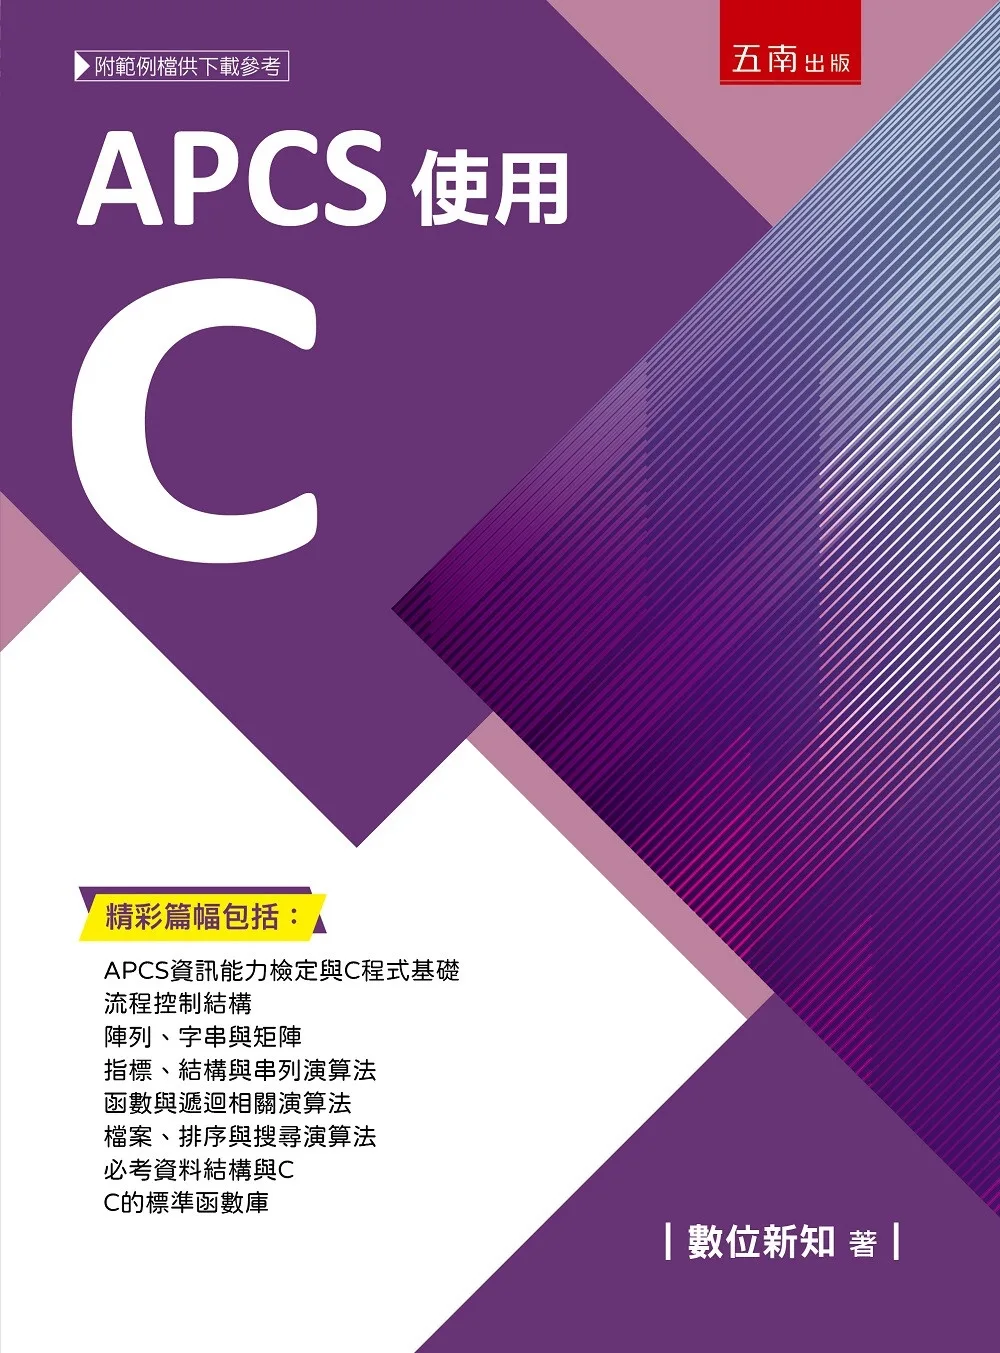 APCS使用C